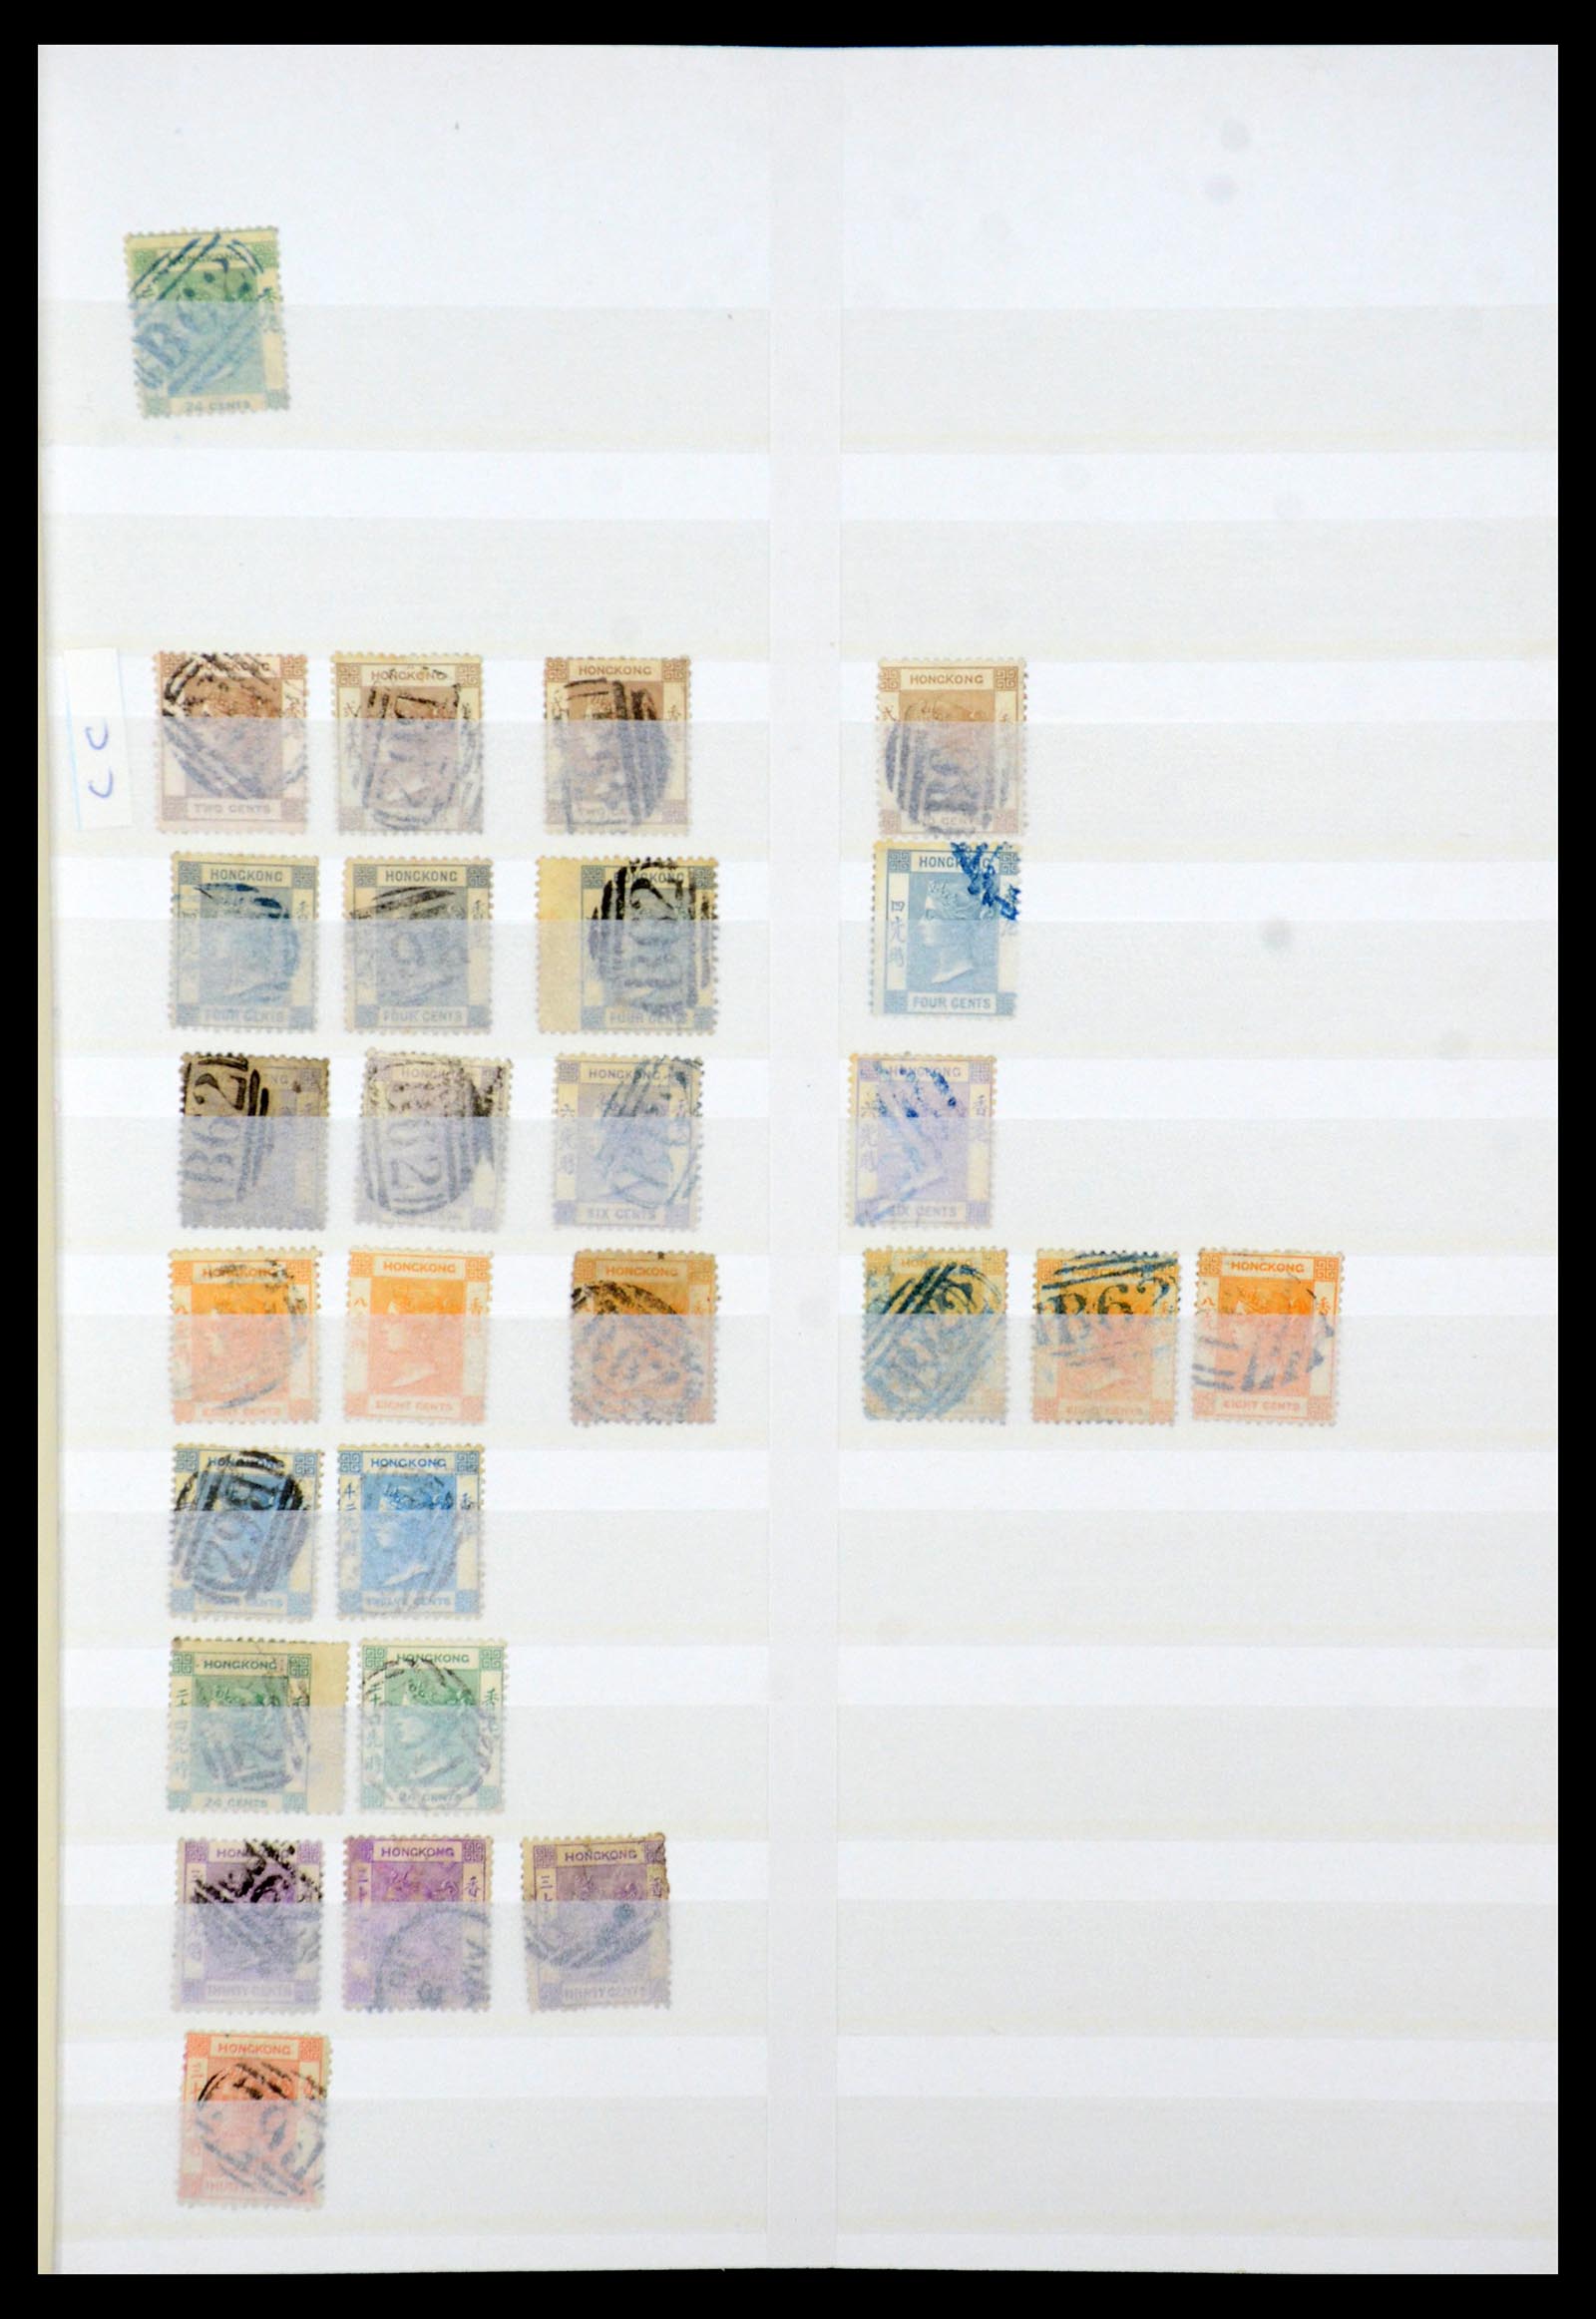 35575 001 - Stamp Collection 35575 Hong Kong 1863-2007.